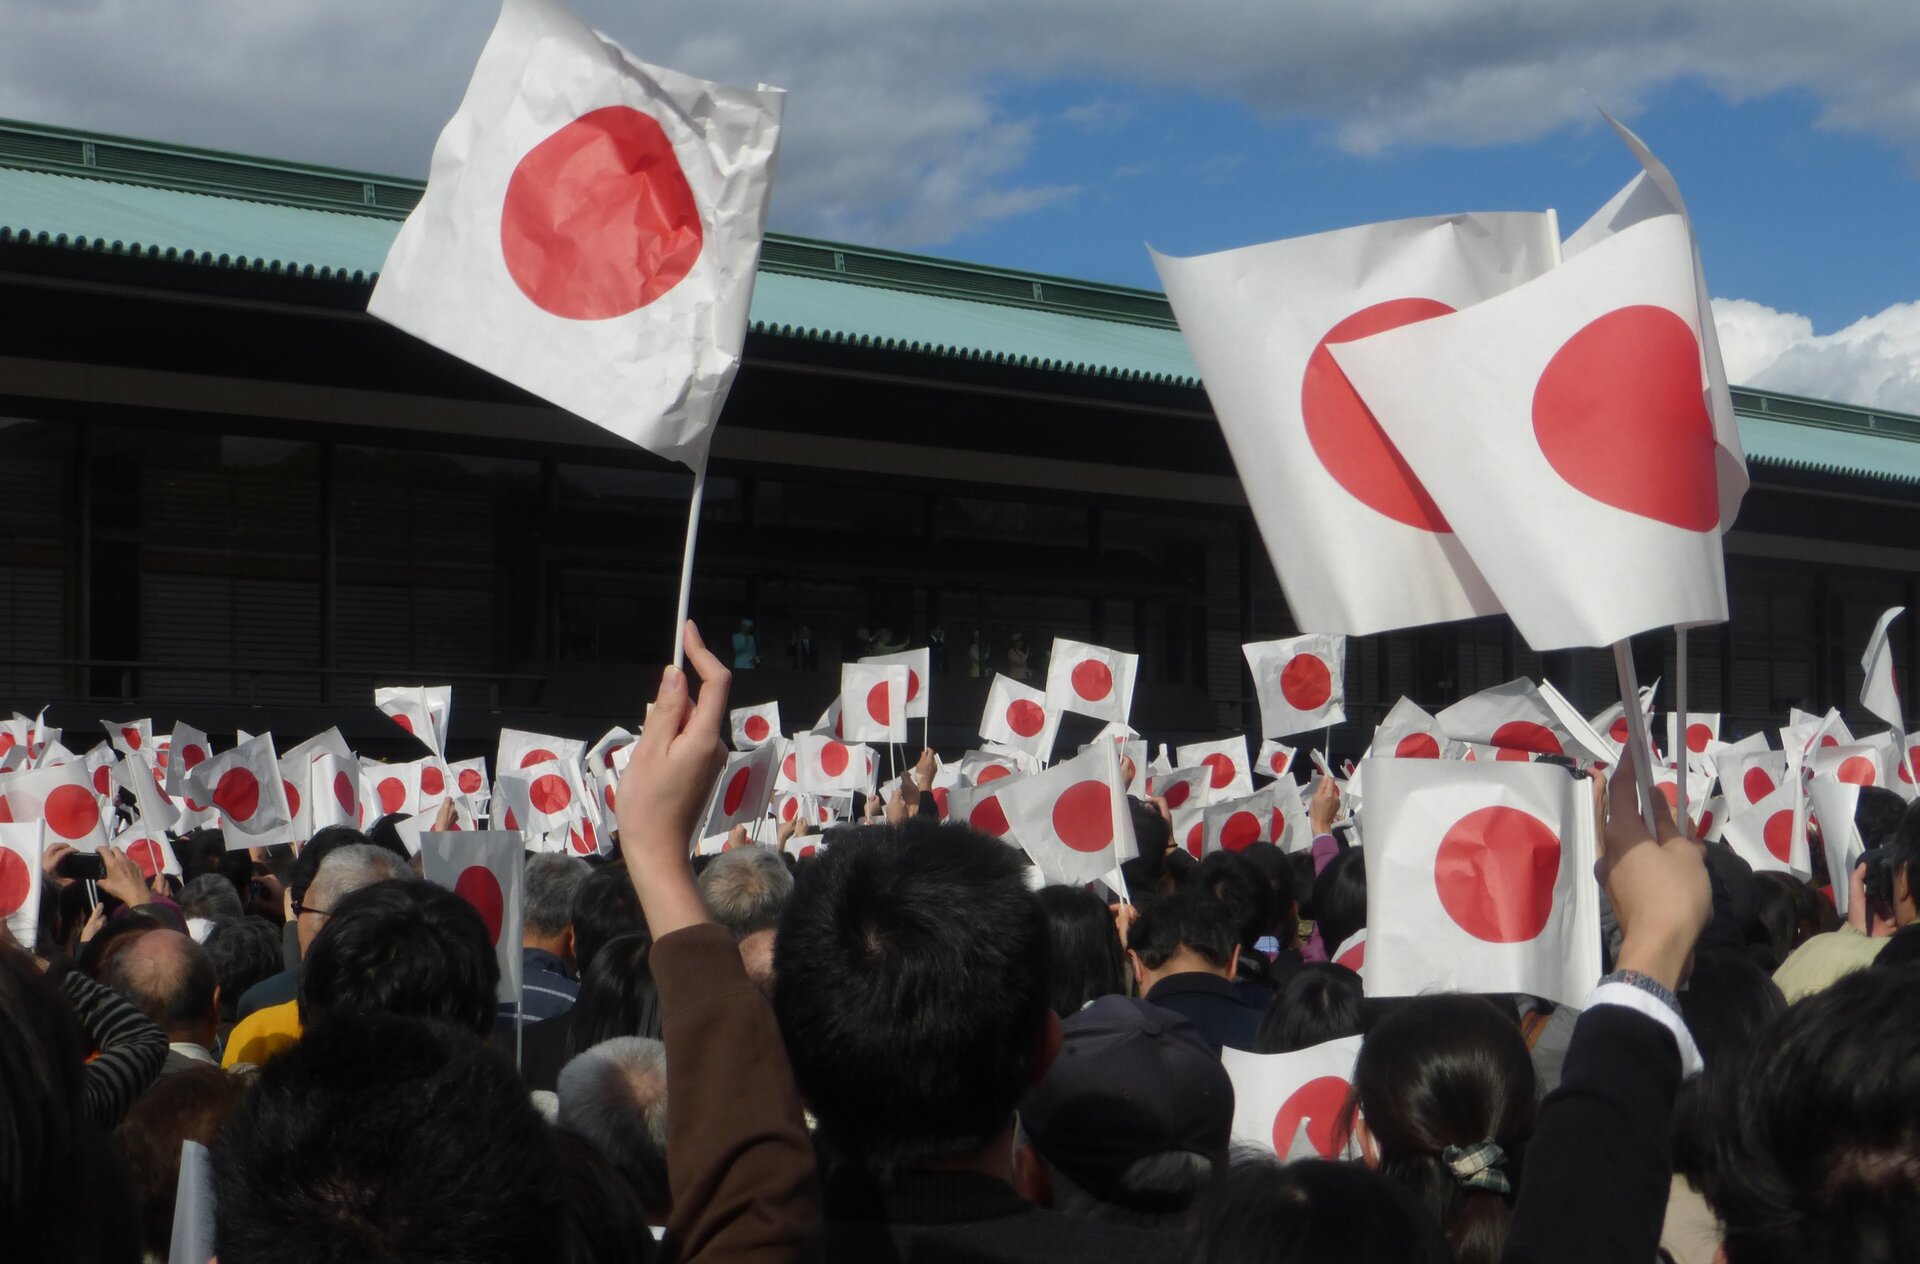 Na zdjęciu znajduje się tłum ludzi, wszyscy trzymają w rękach flagę Japonii. Flaga ma białe tło a na jej środku znajduje się czerwone koło. 